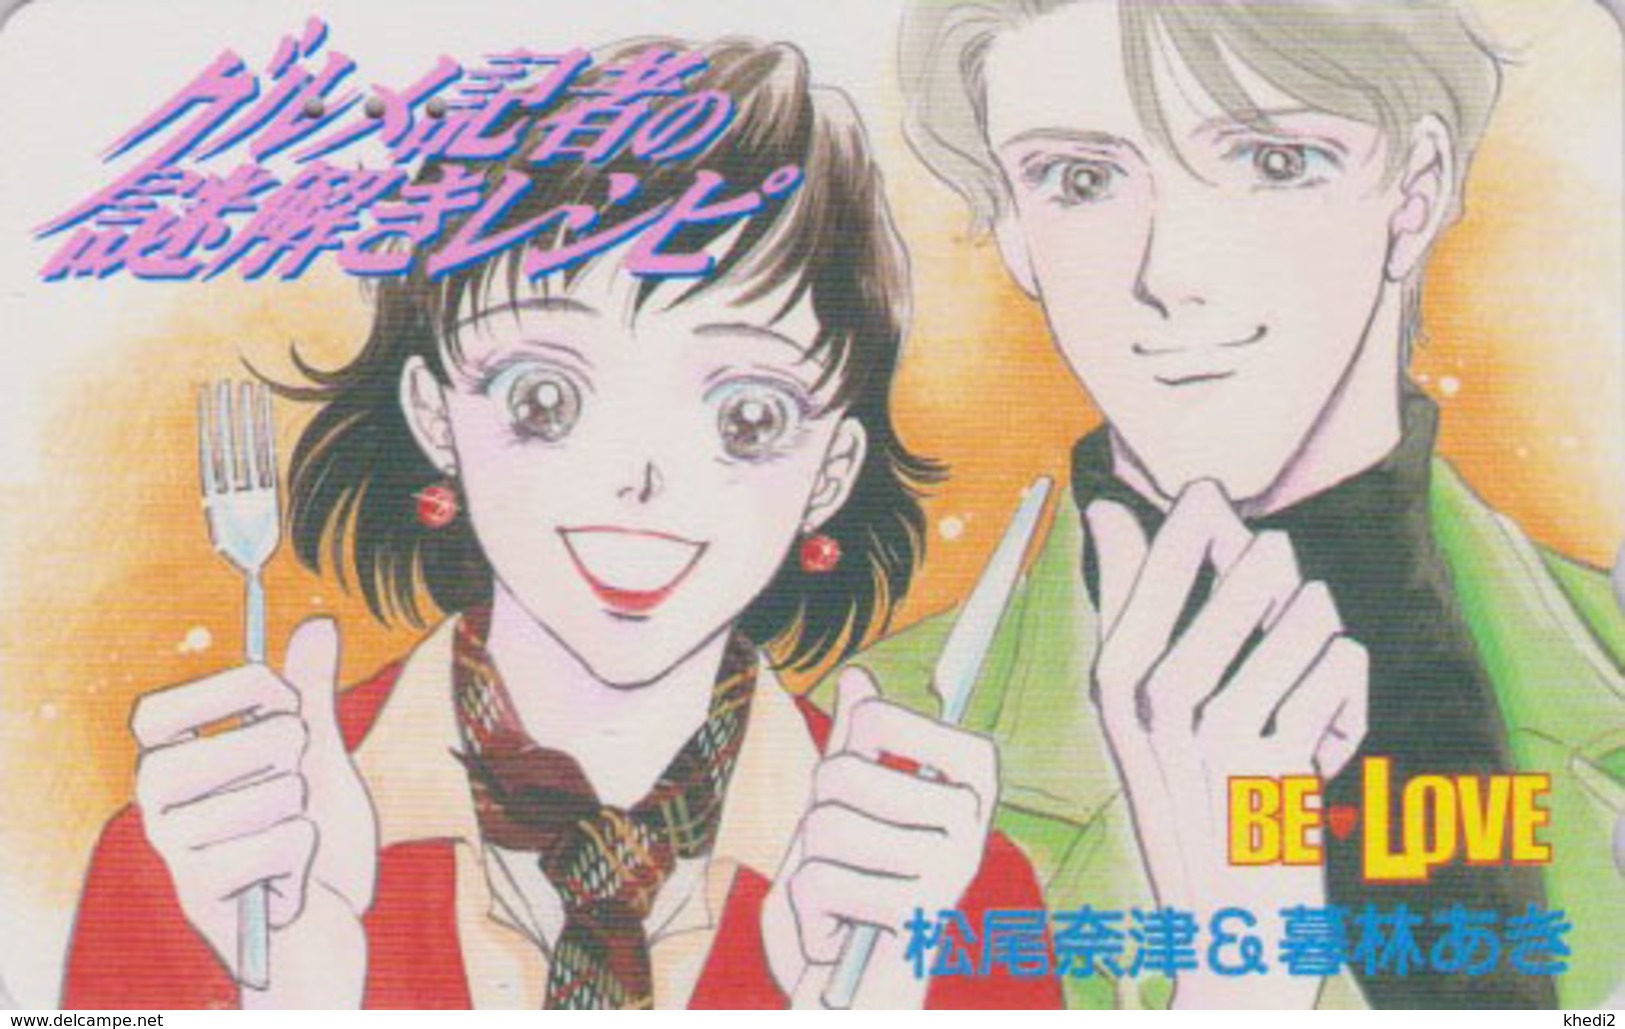 Télécarte Japon / 110-016 - MANGA - BE LOVE  - ANIME Japan Phonecard - BD COMICS TK -  11517 - BD